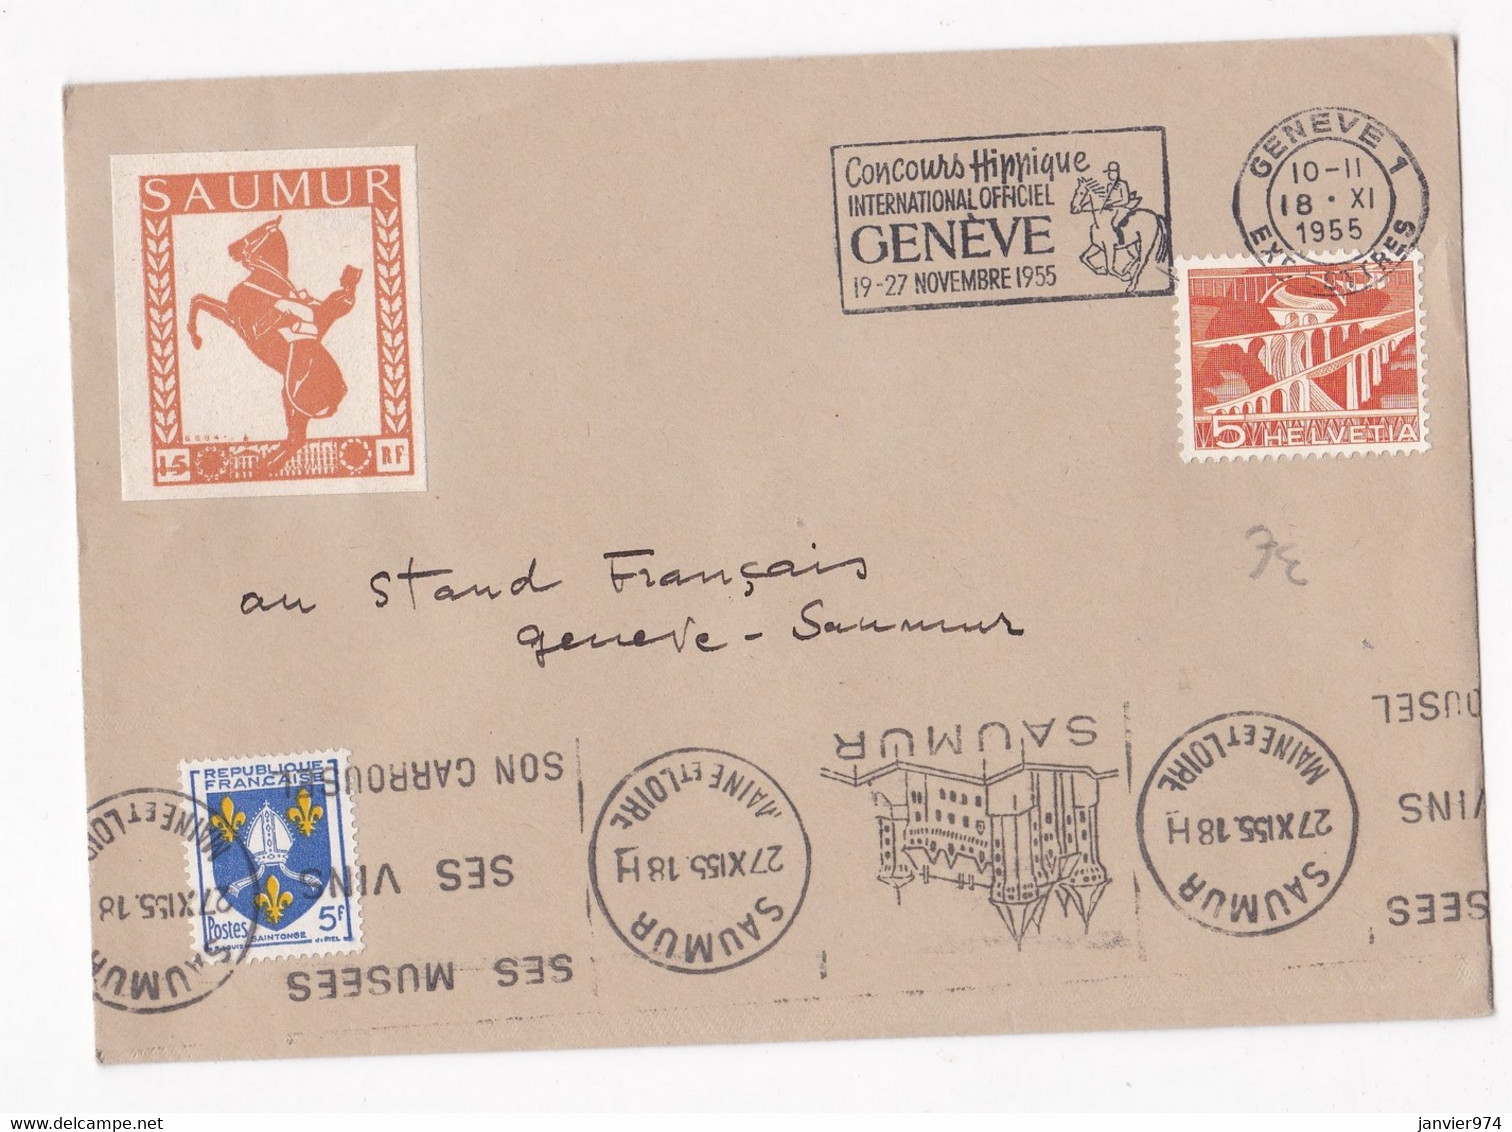 Enveloppe Affranchissement France Suisse 1955 Concours Hippique De Genève. Vignette Saumur. - Hípica